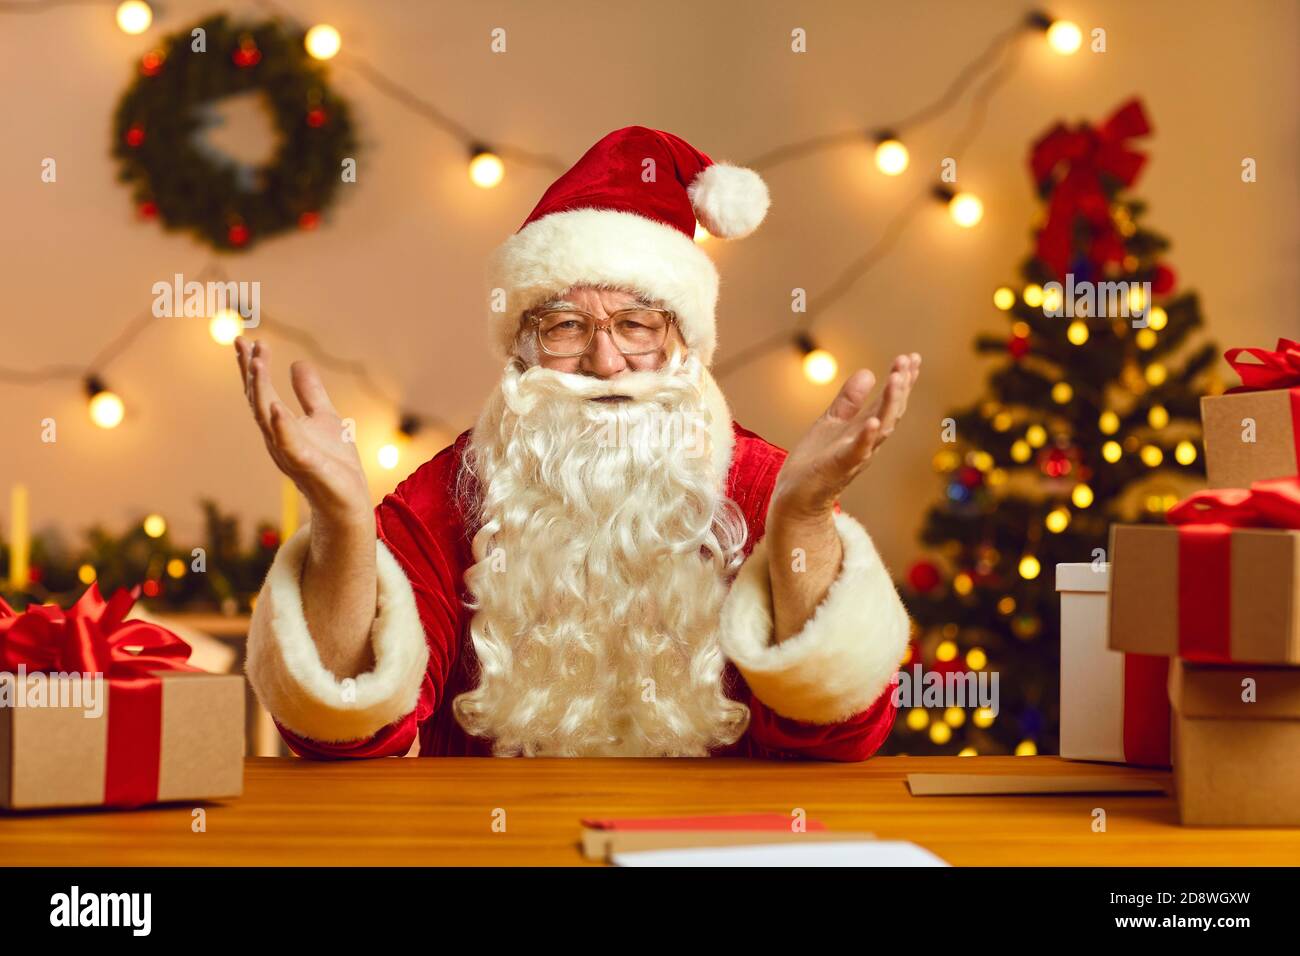 Santa Claus vui vẻ khi nói chuyện qua video với các bé sử dụng Webcam - Bạn đang muốn tạo niềm vui cho con cái trong dịp Giáng Sinh? Hãy cho họ được trò chuyện với ông già Noel thân thiện và dễ thương qua video. Santa Claus sẽ giúp tạo nên những kỷ niệm khó quên cho các bé.